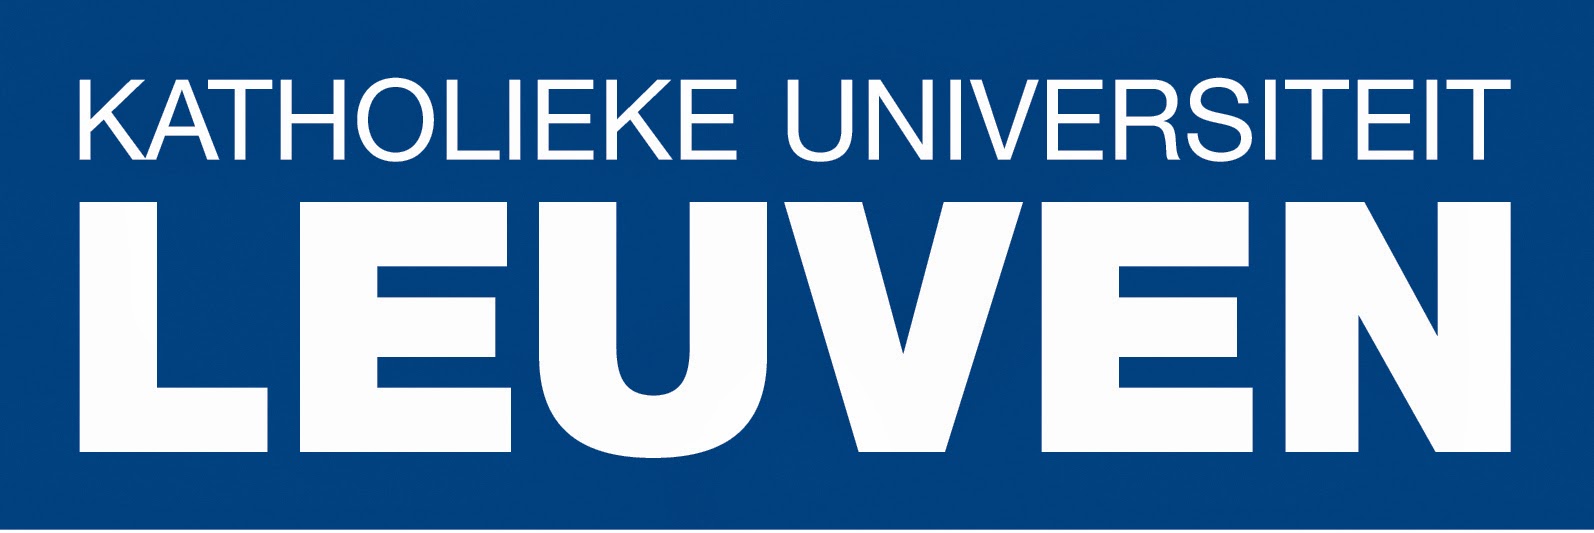 Belgium University of Leuven MDRN Doctoral Scholarships.